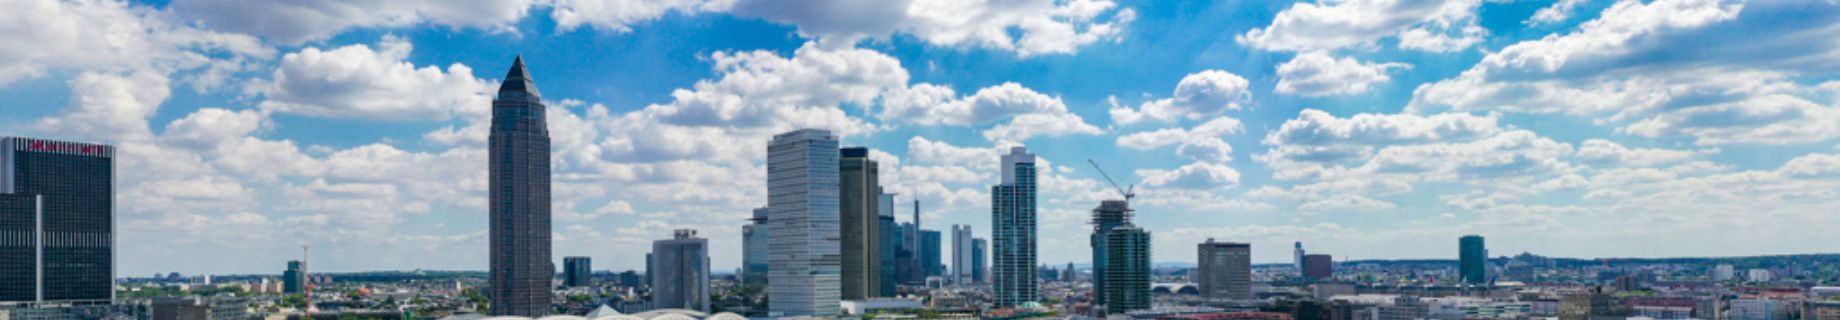 PORR Header Hochbau; man sieht die Skyline von Frankfurt am Tag; der Himmel ist blau aber einige Wolken ziehen durch die Stadt; man sieht mehrere Hochhäuder